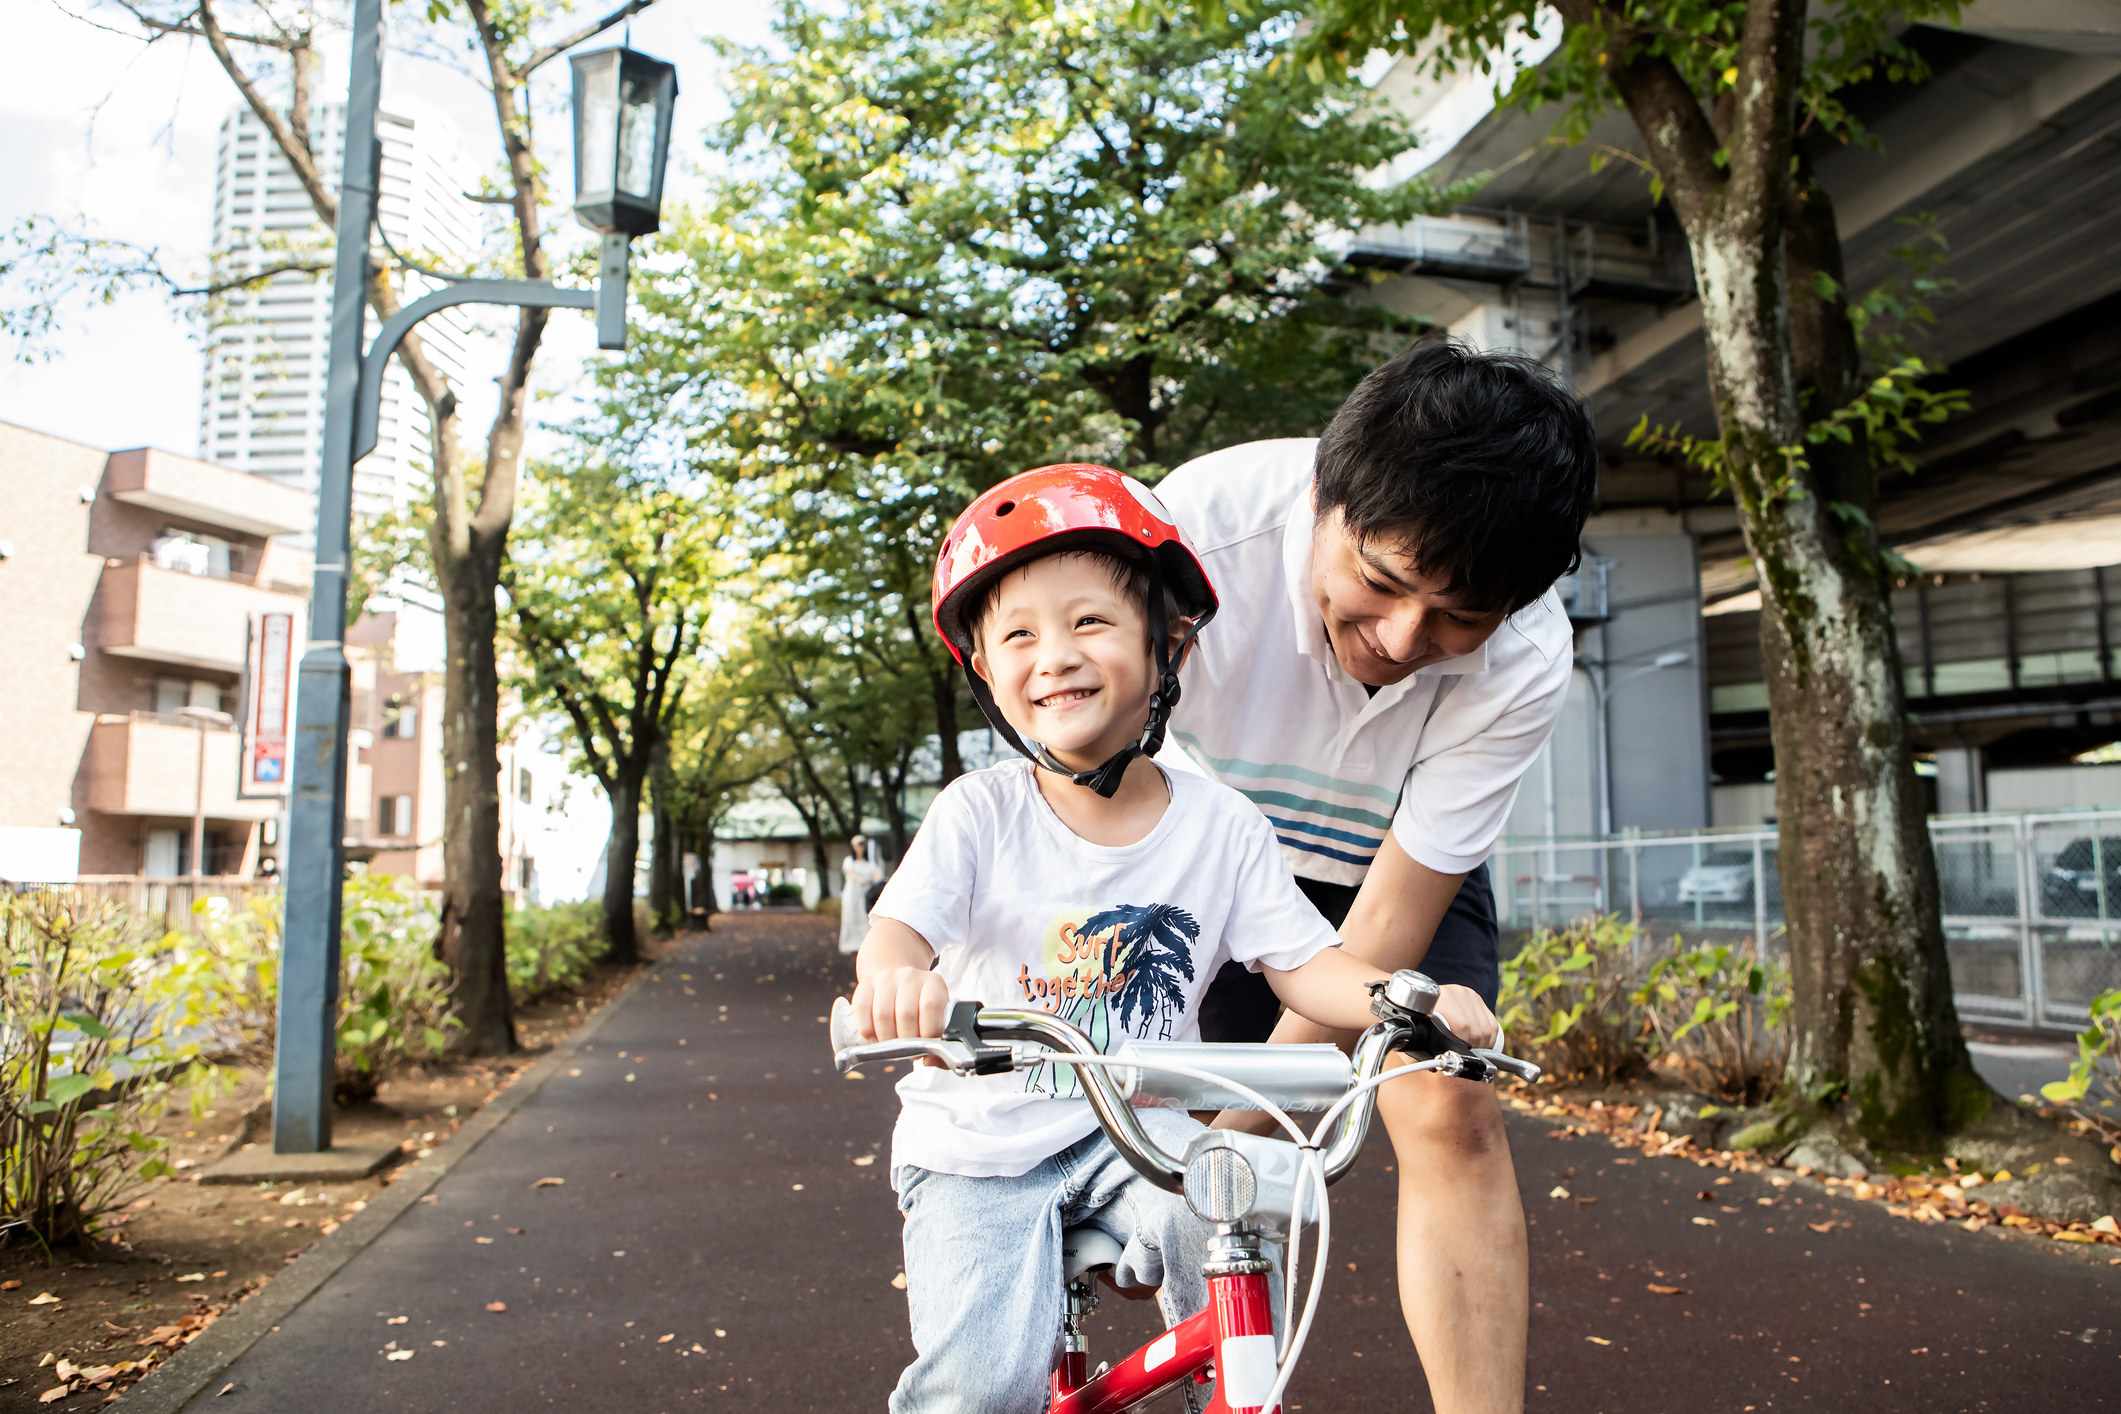 一个人帮助一个孩子骑自行车